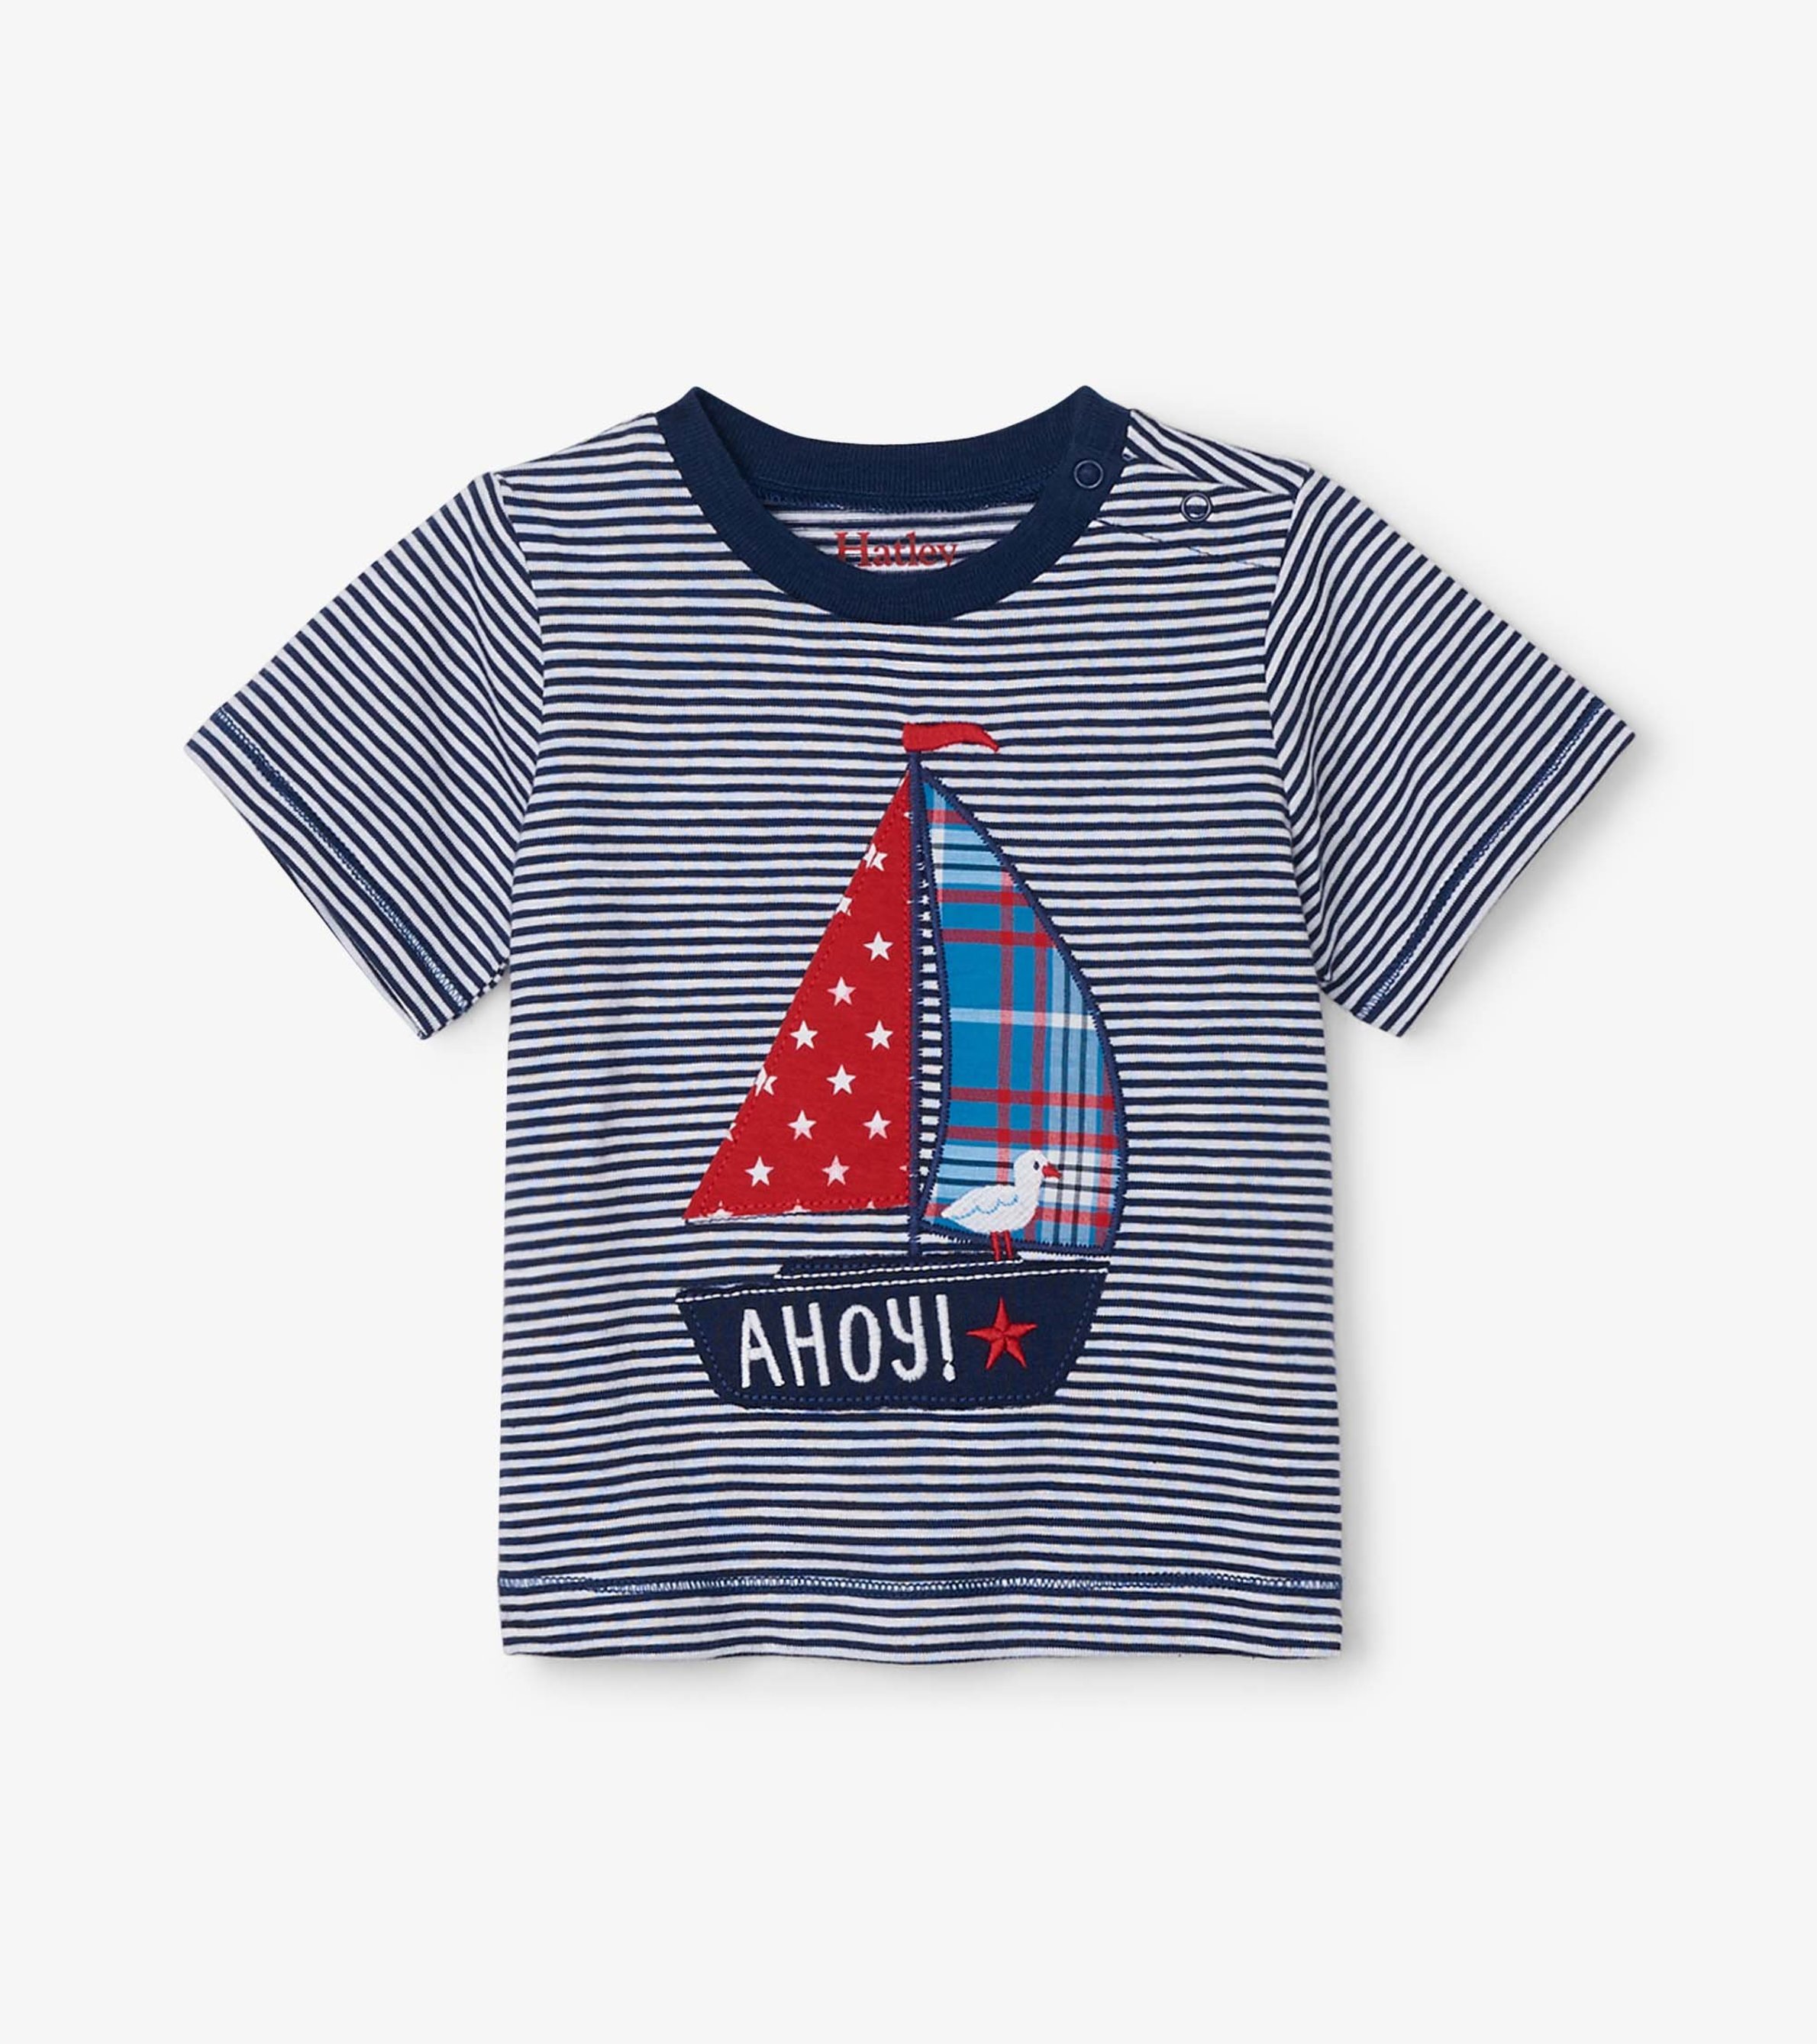 Ahoy! Baby Graphic Tee - Hatley CA